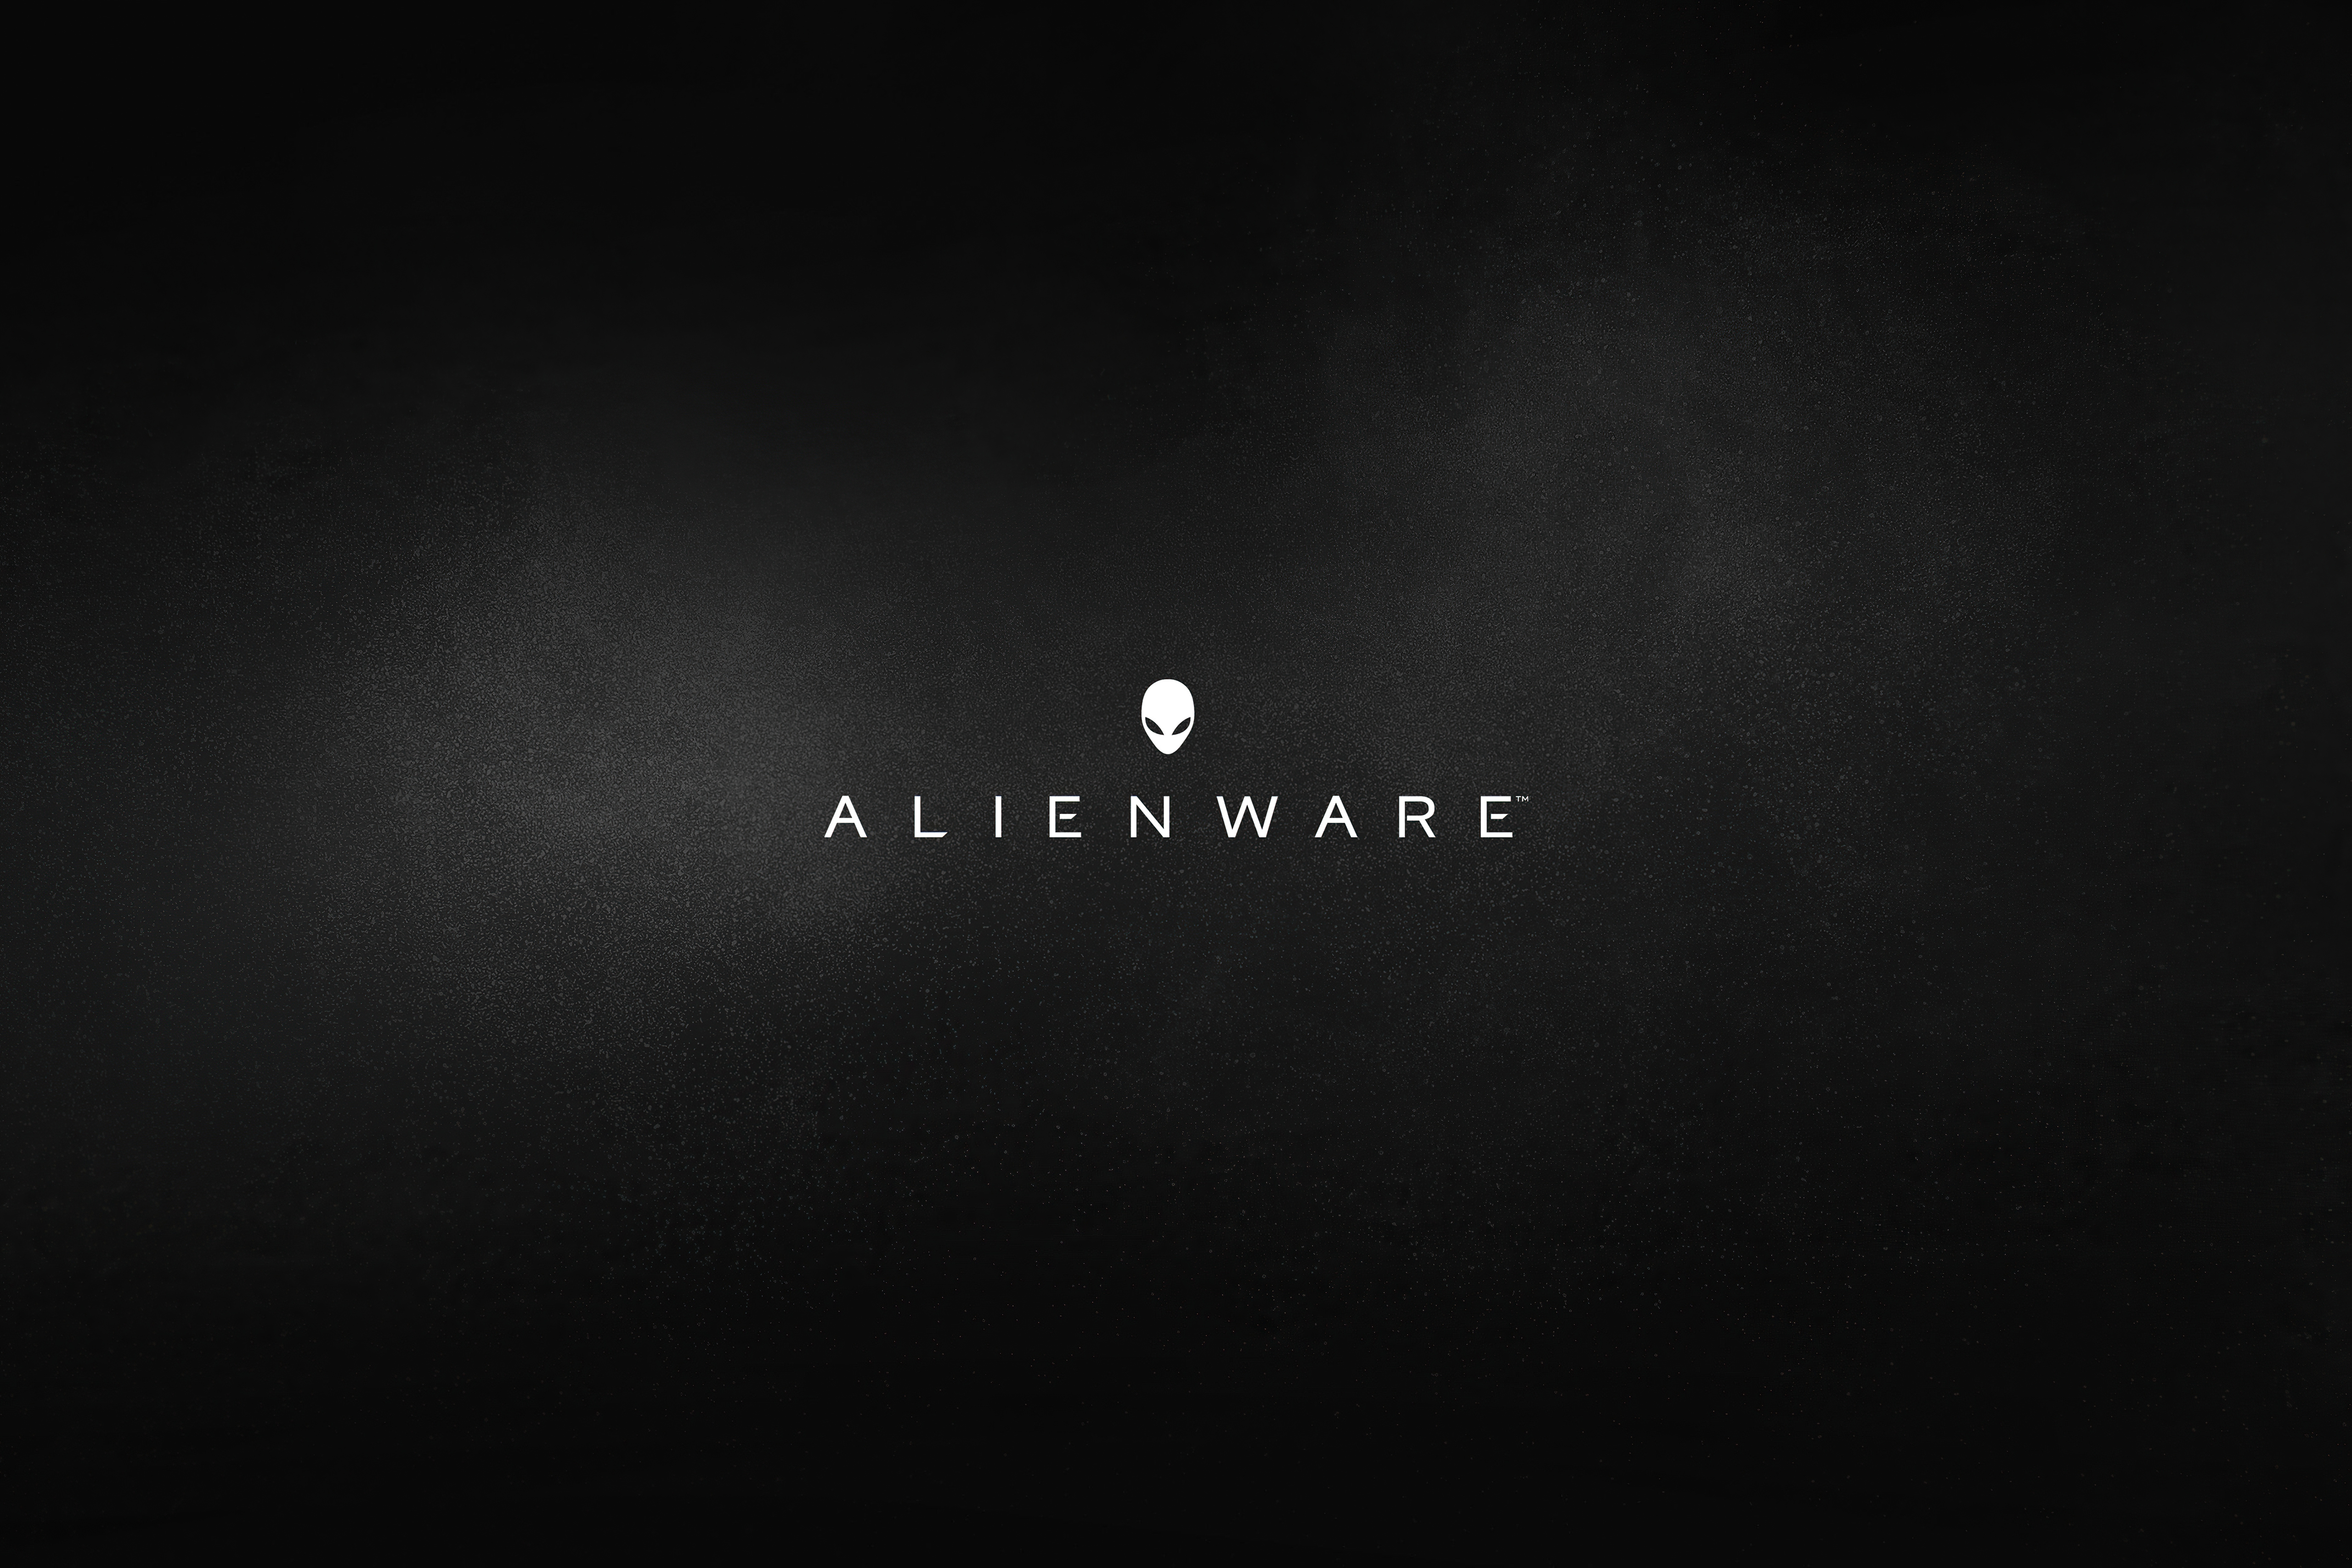 Alienware Dark 5k, HD Computer, 4k